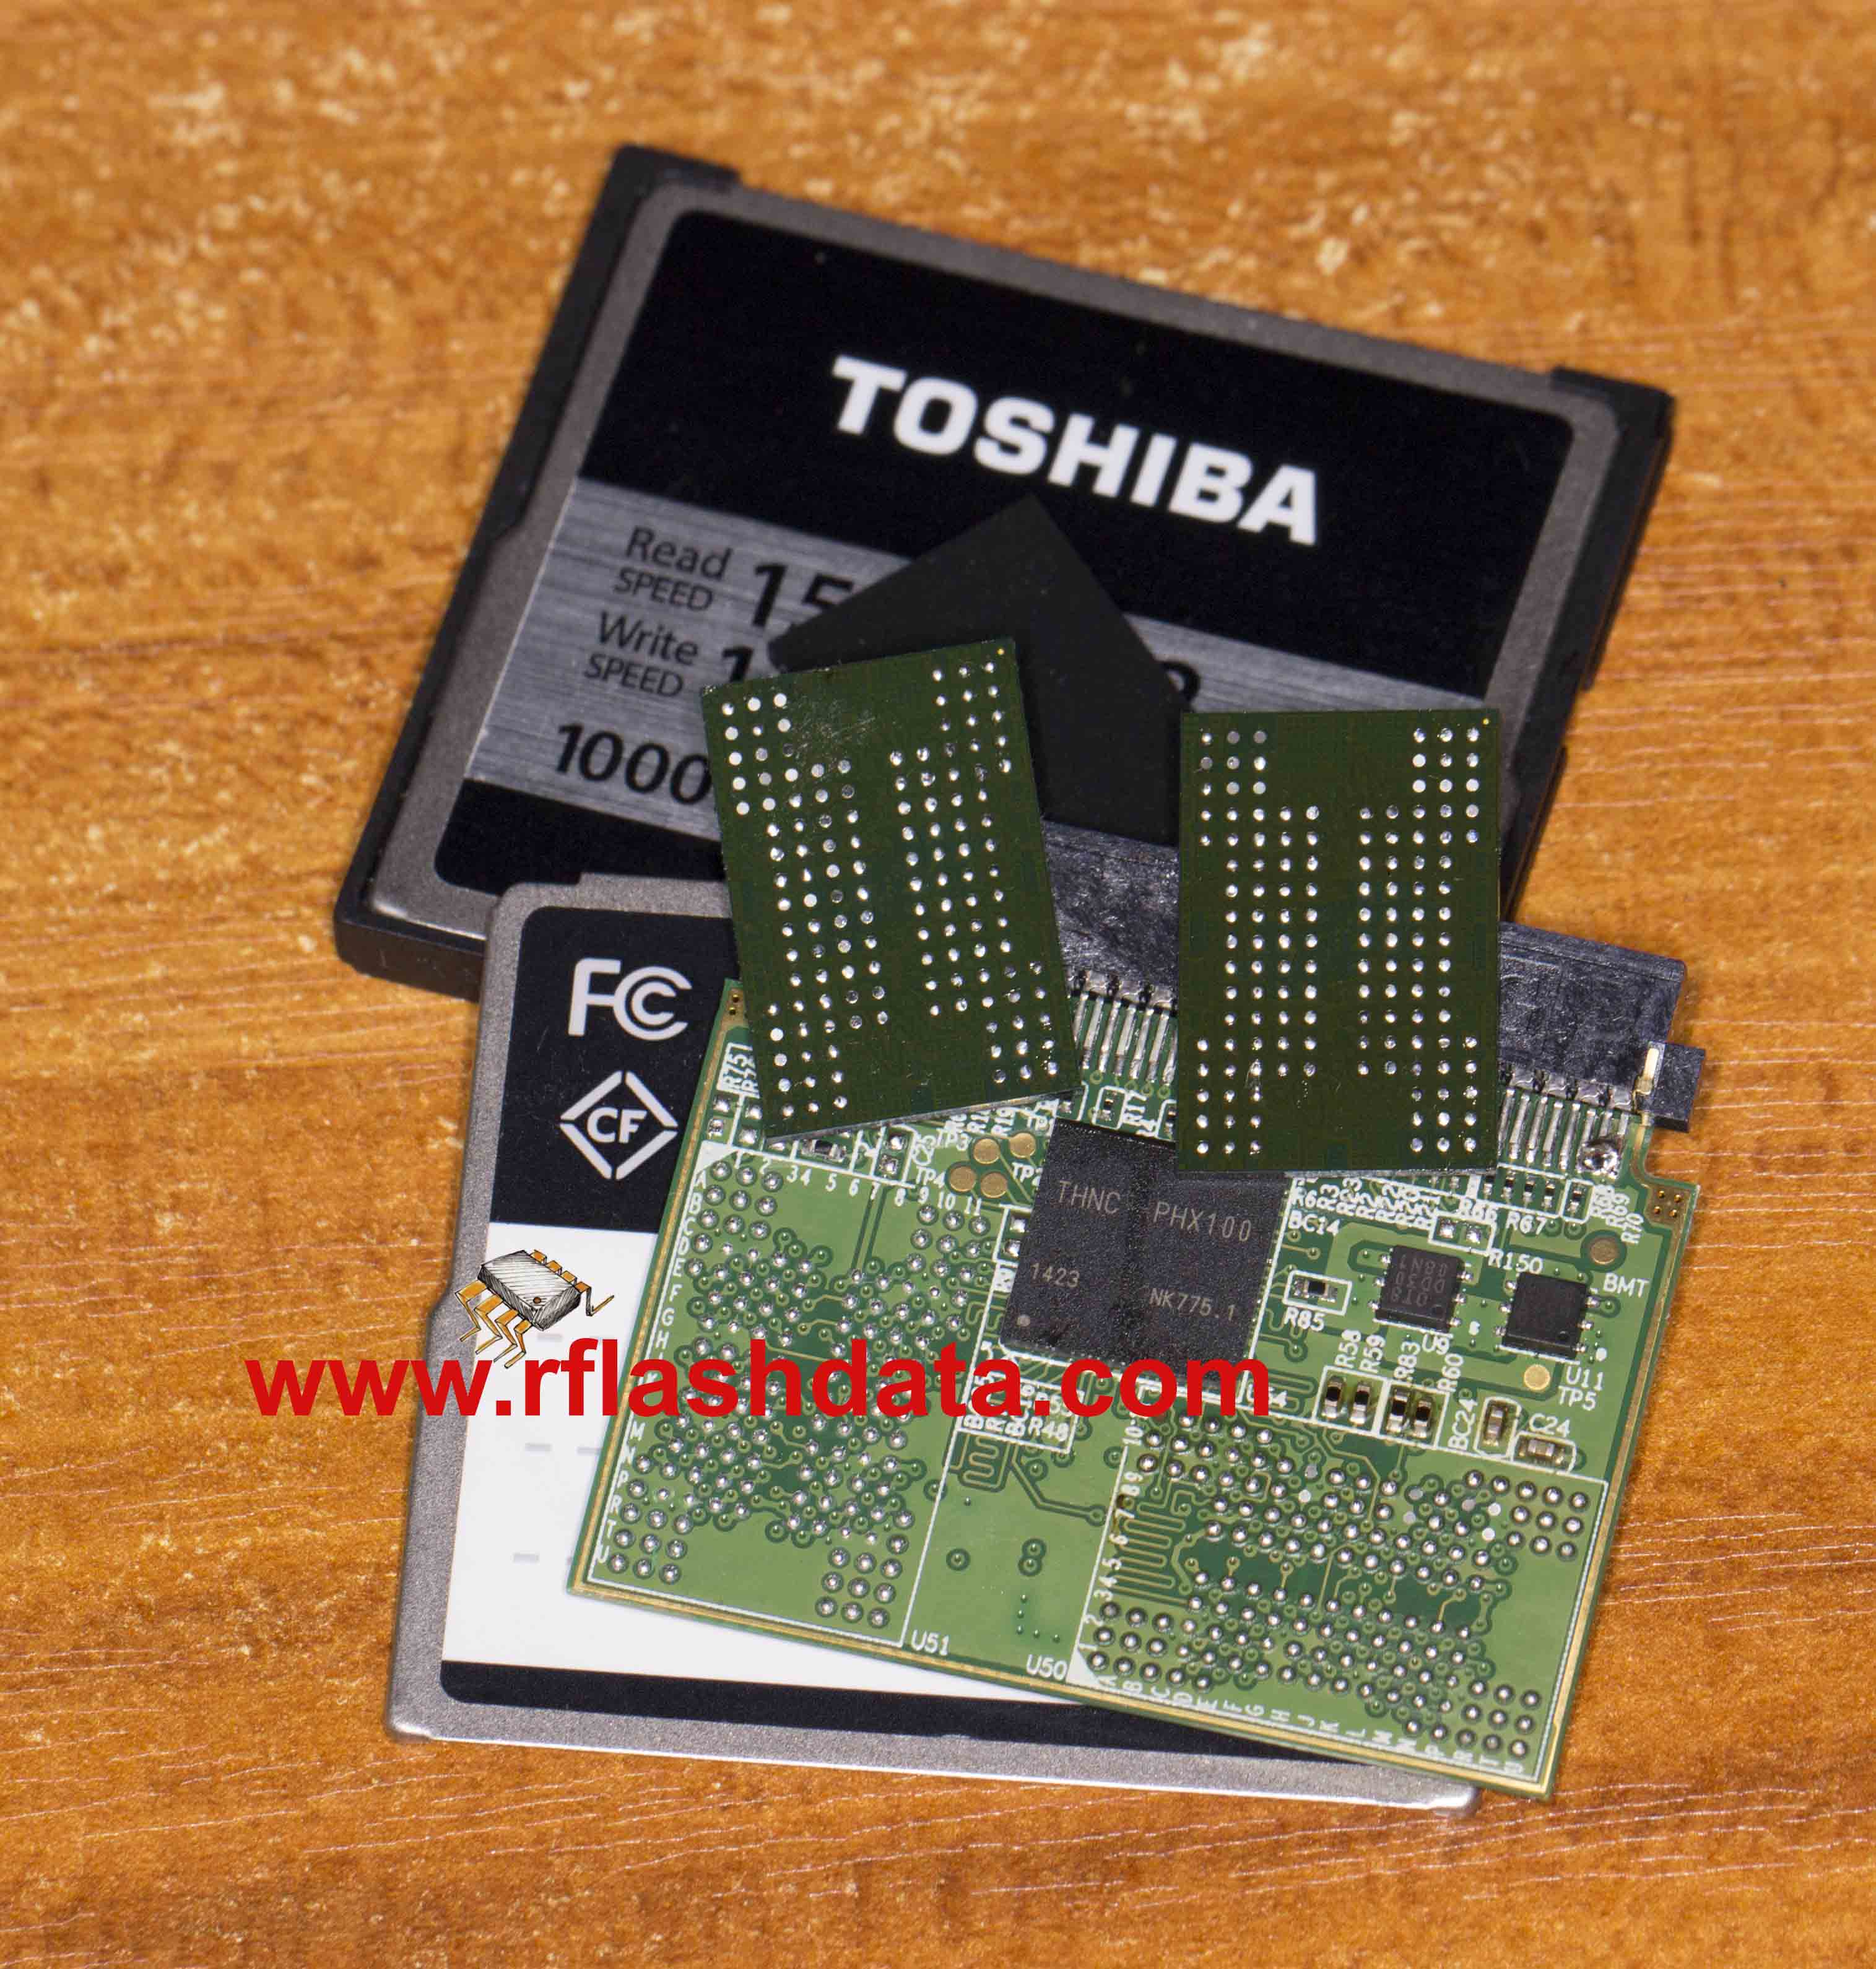 Toshba BGA152 Flash chip